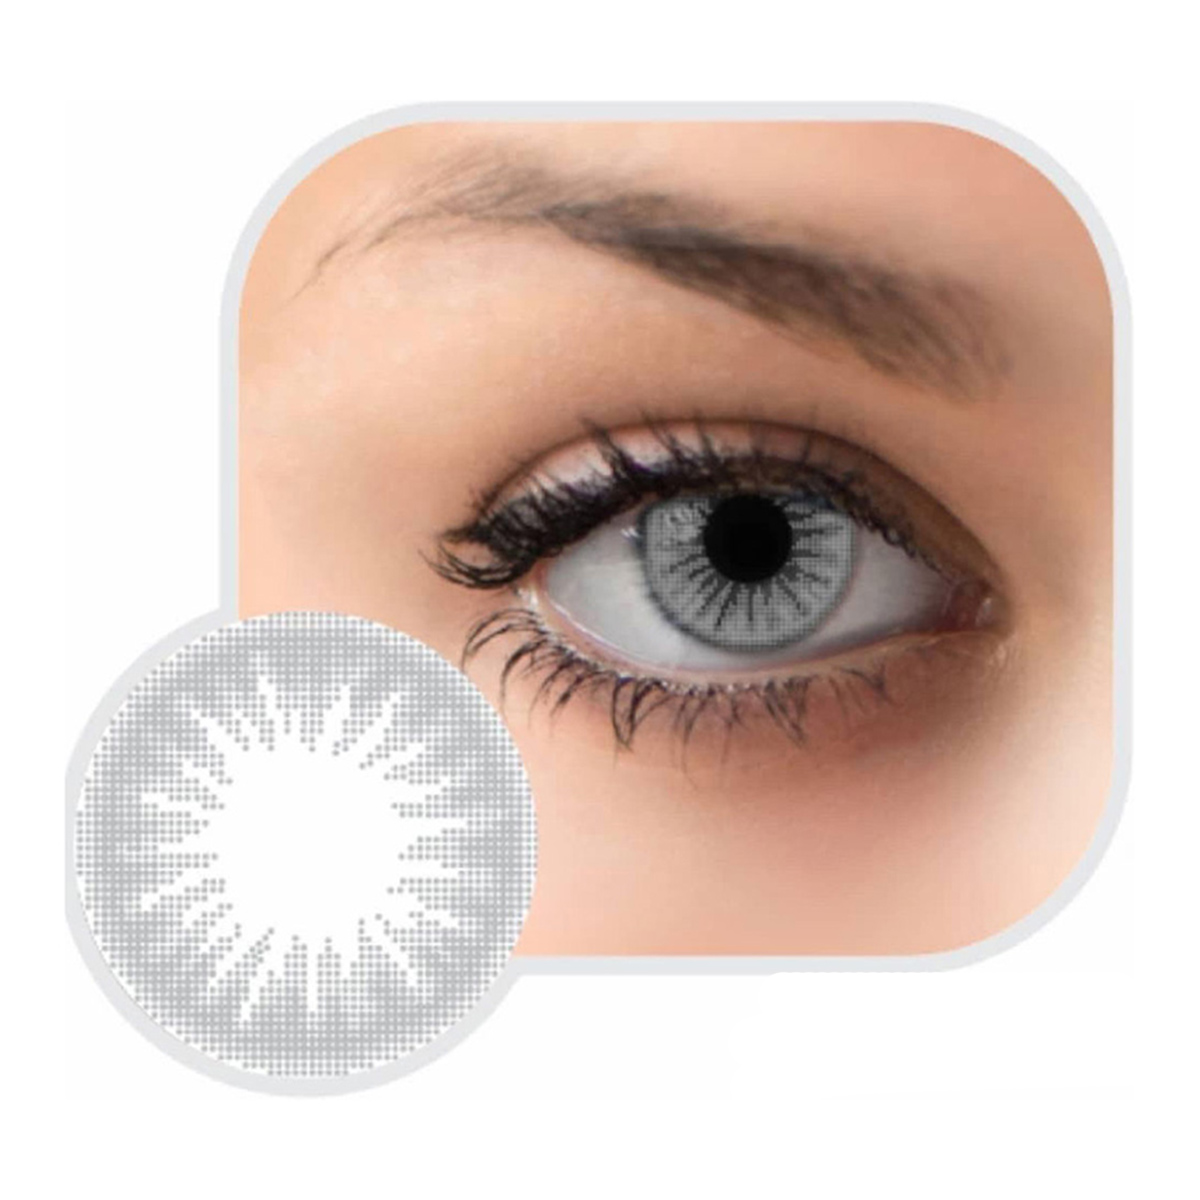 لنز تماسی رنگی چشم~Eye Contact Color Lens~GLAMOUR